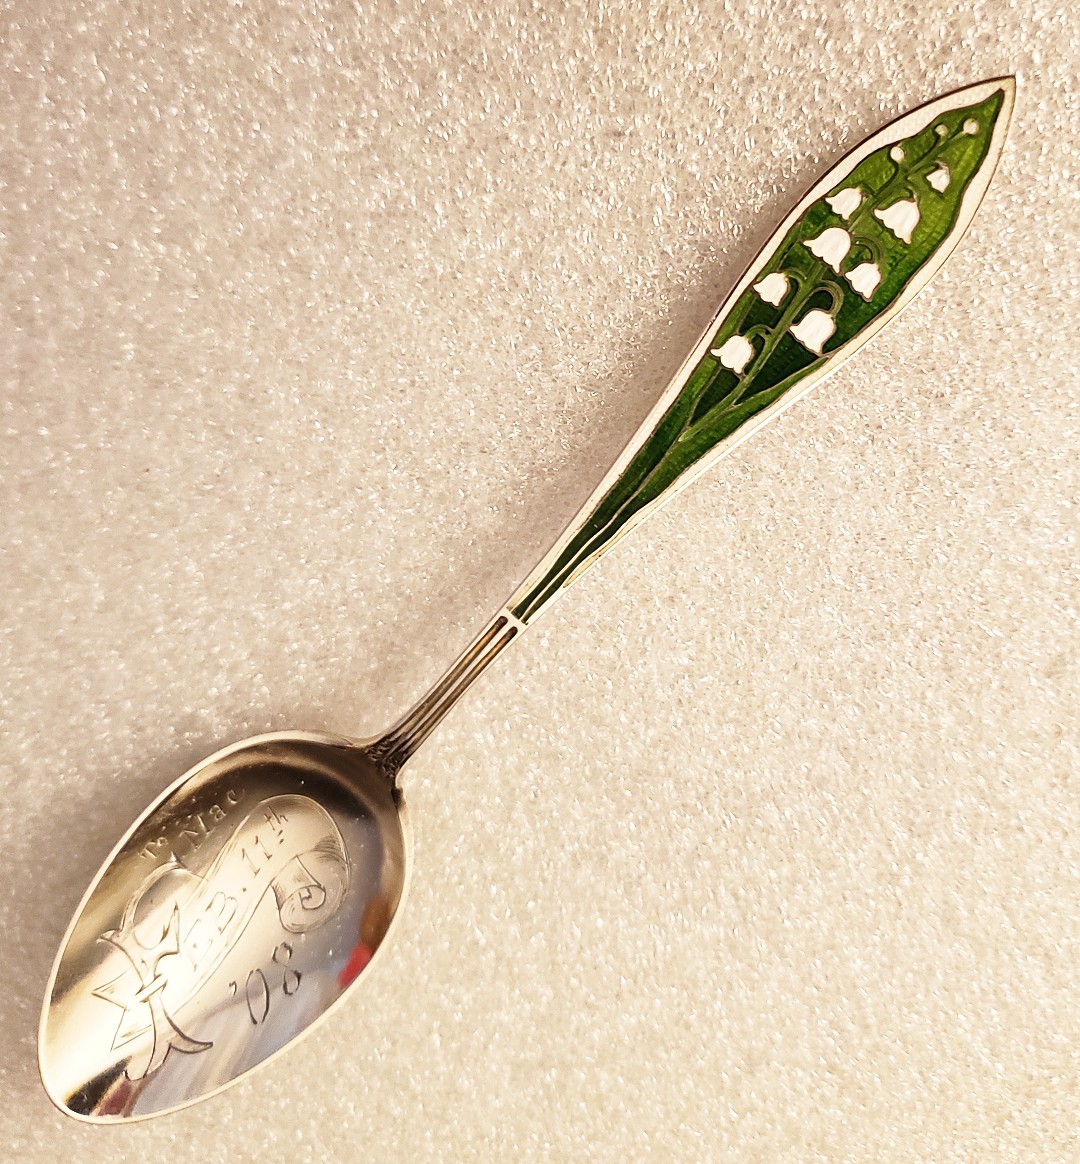 LotV-spoon-basse-taille-enamel (1).jpg